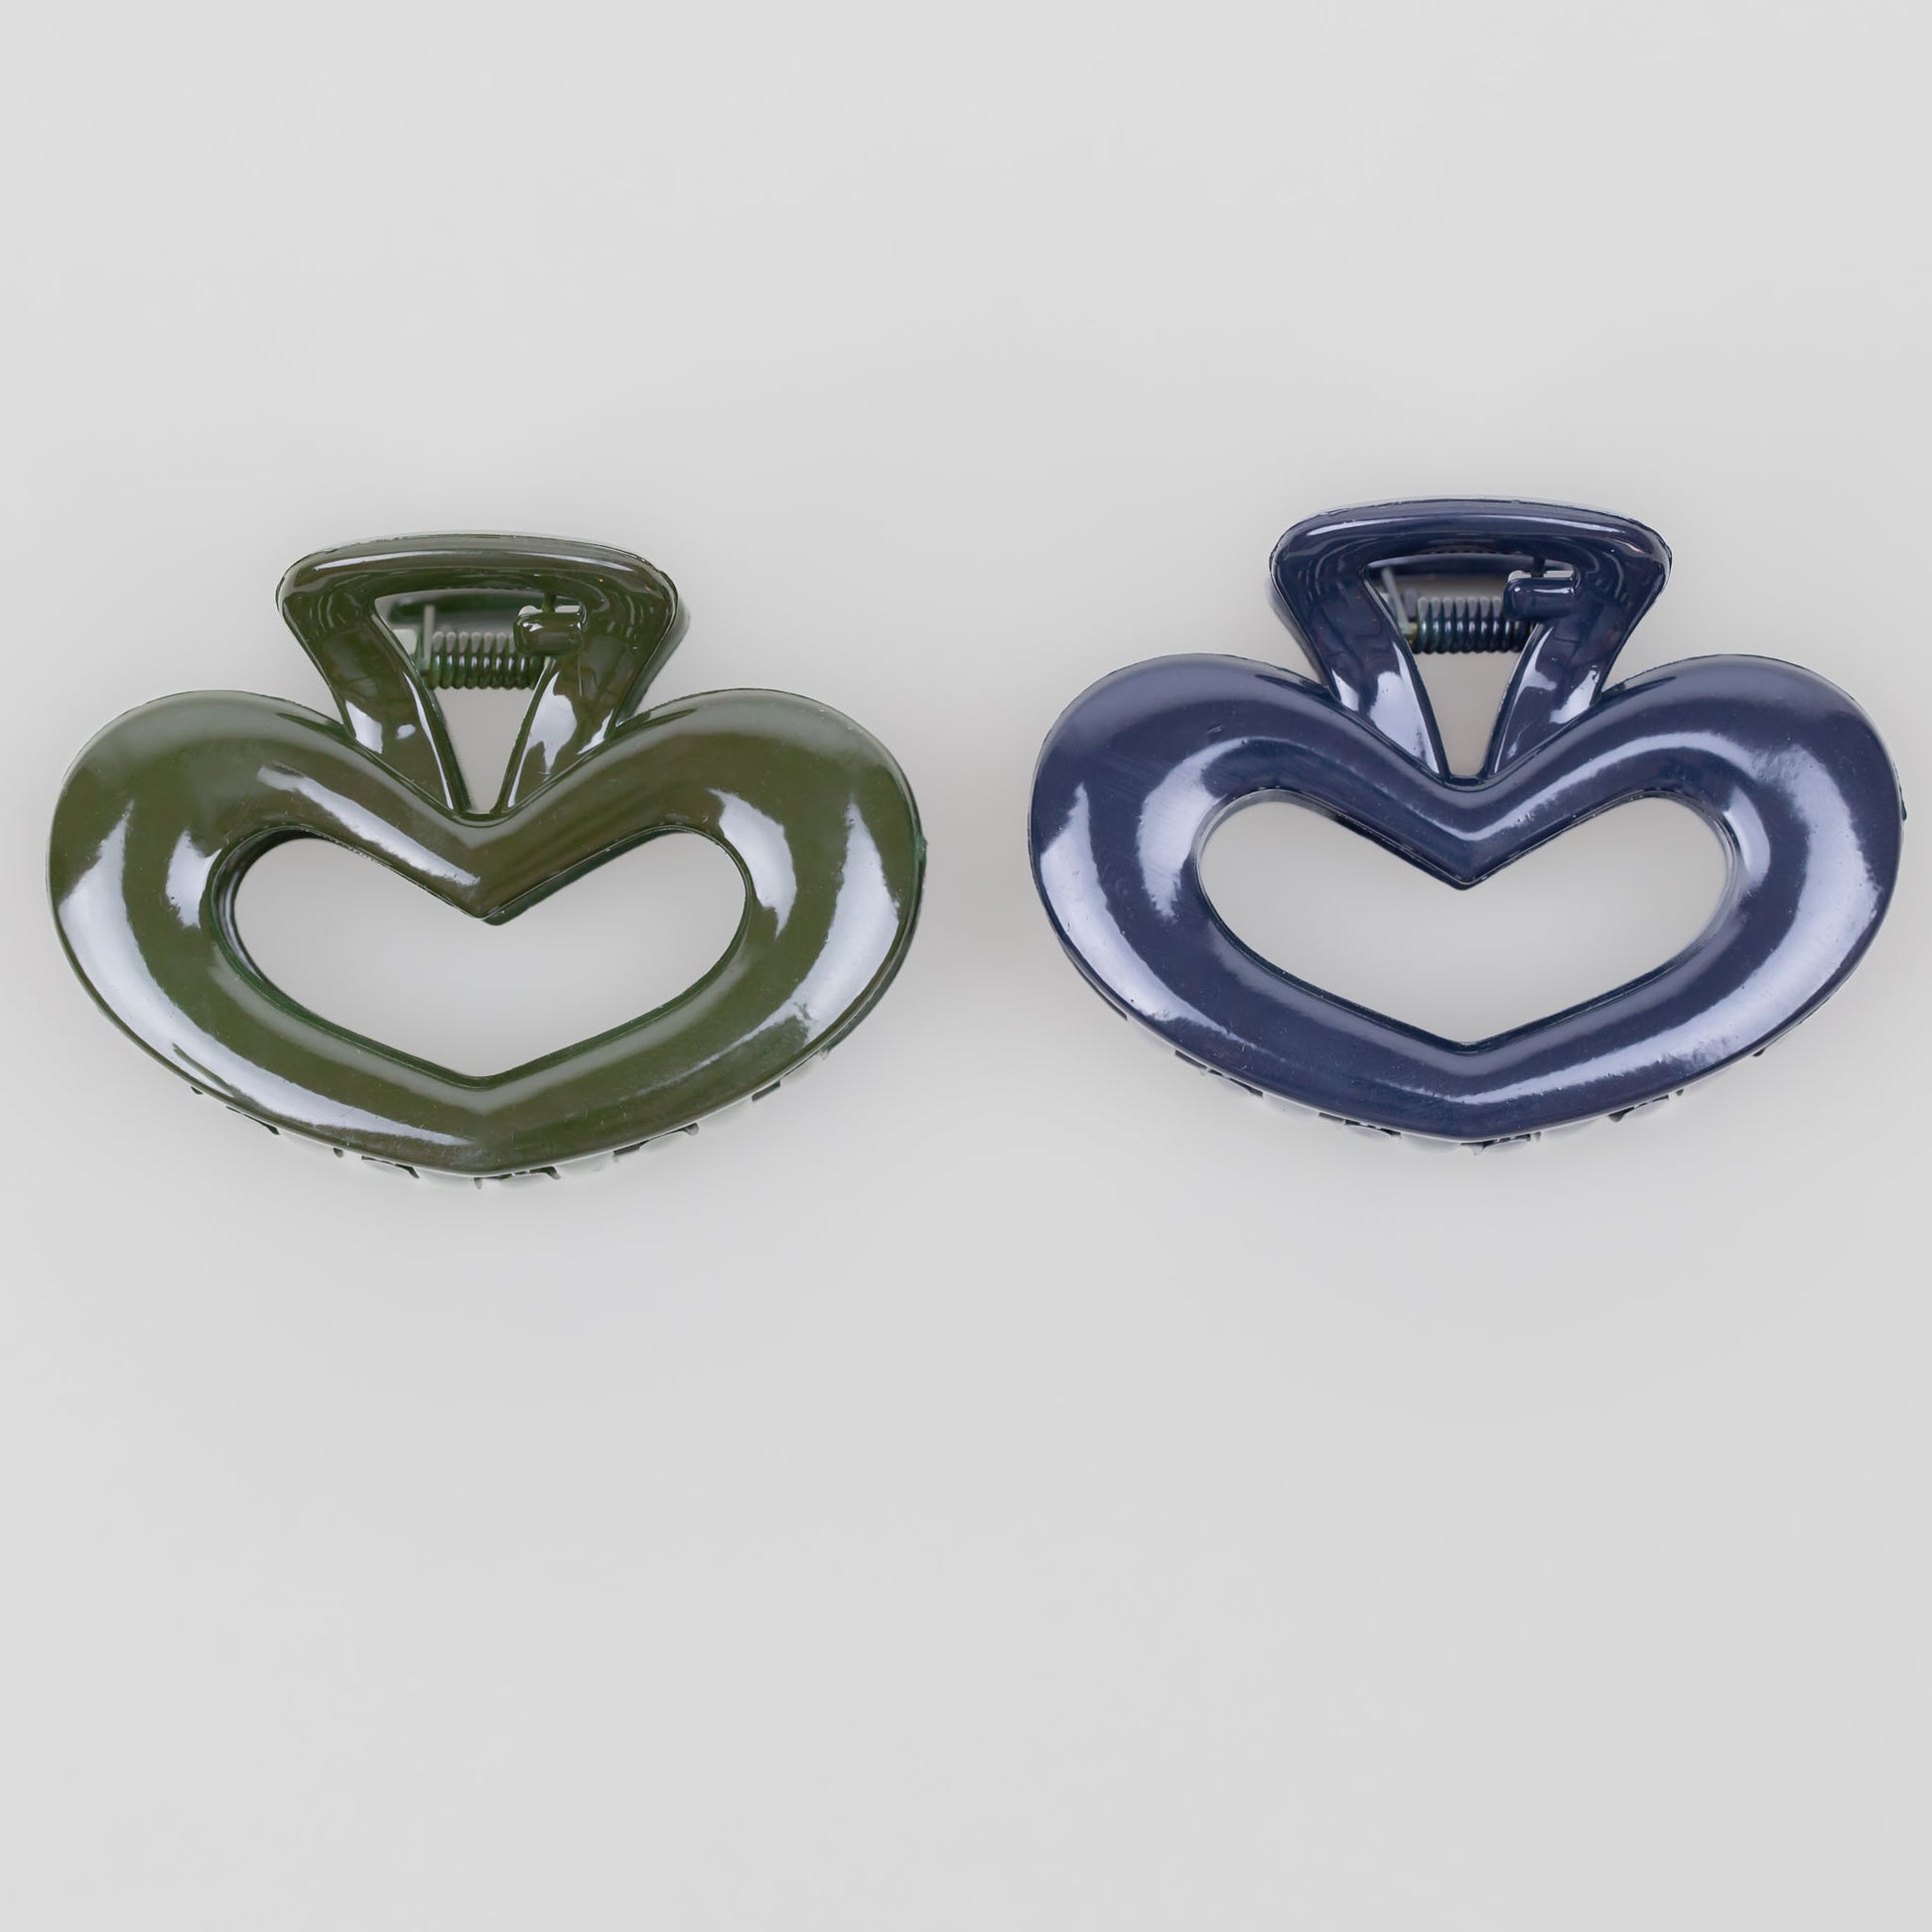 Clame de păr medii în formă de inimă cu textură lucioasă, set 2 buc - Verde, Albastru